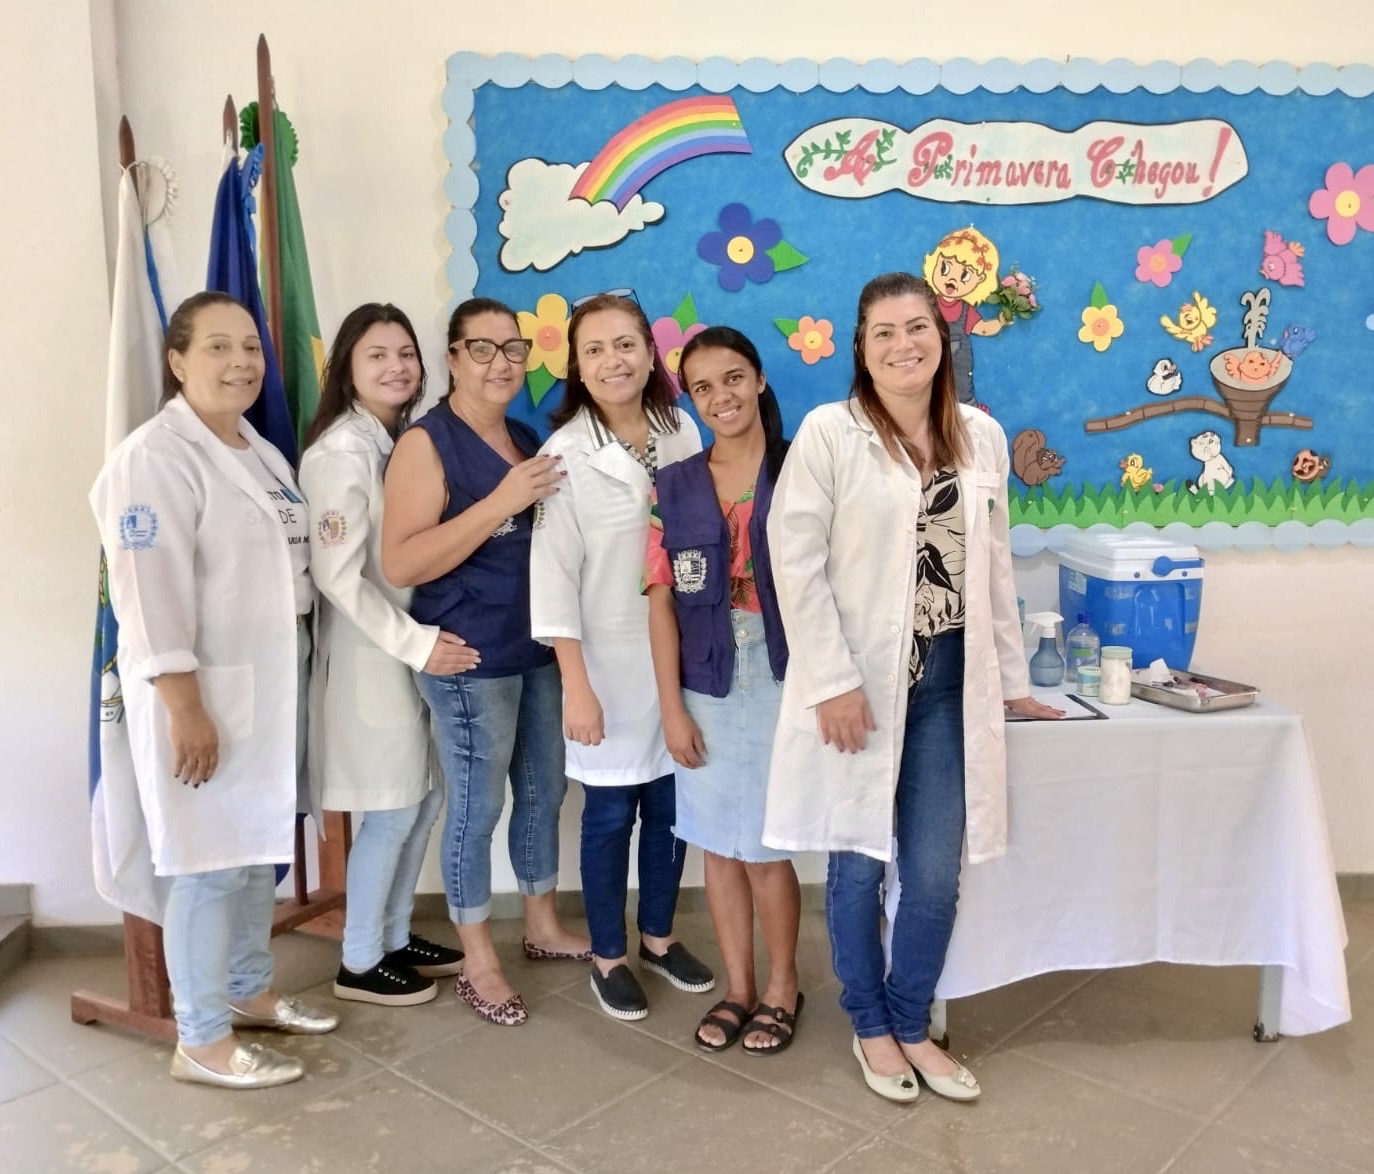 ESF de Manoel de Moraes realiza ações de vacinação nas escolas